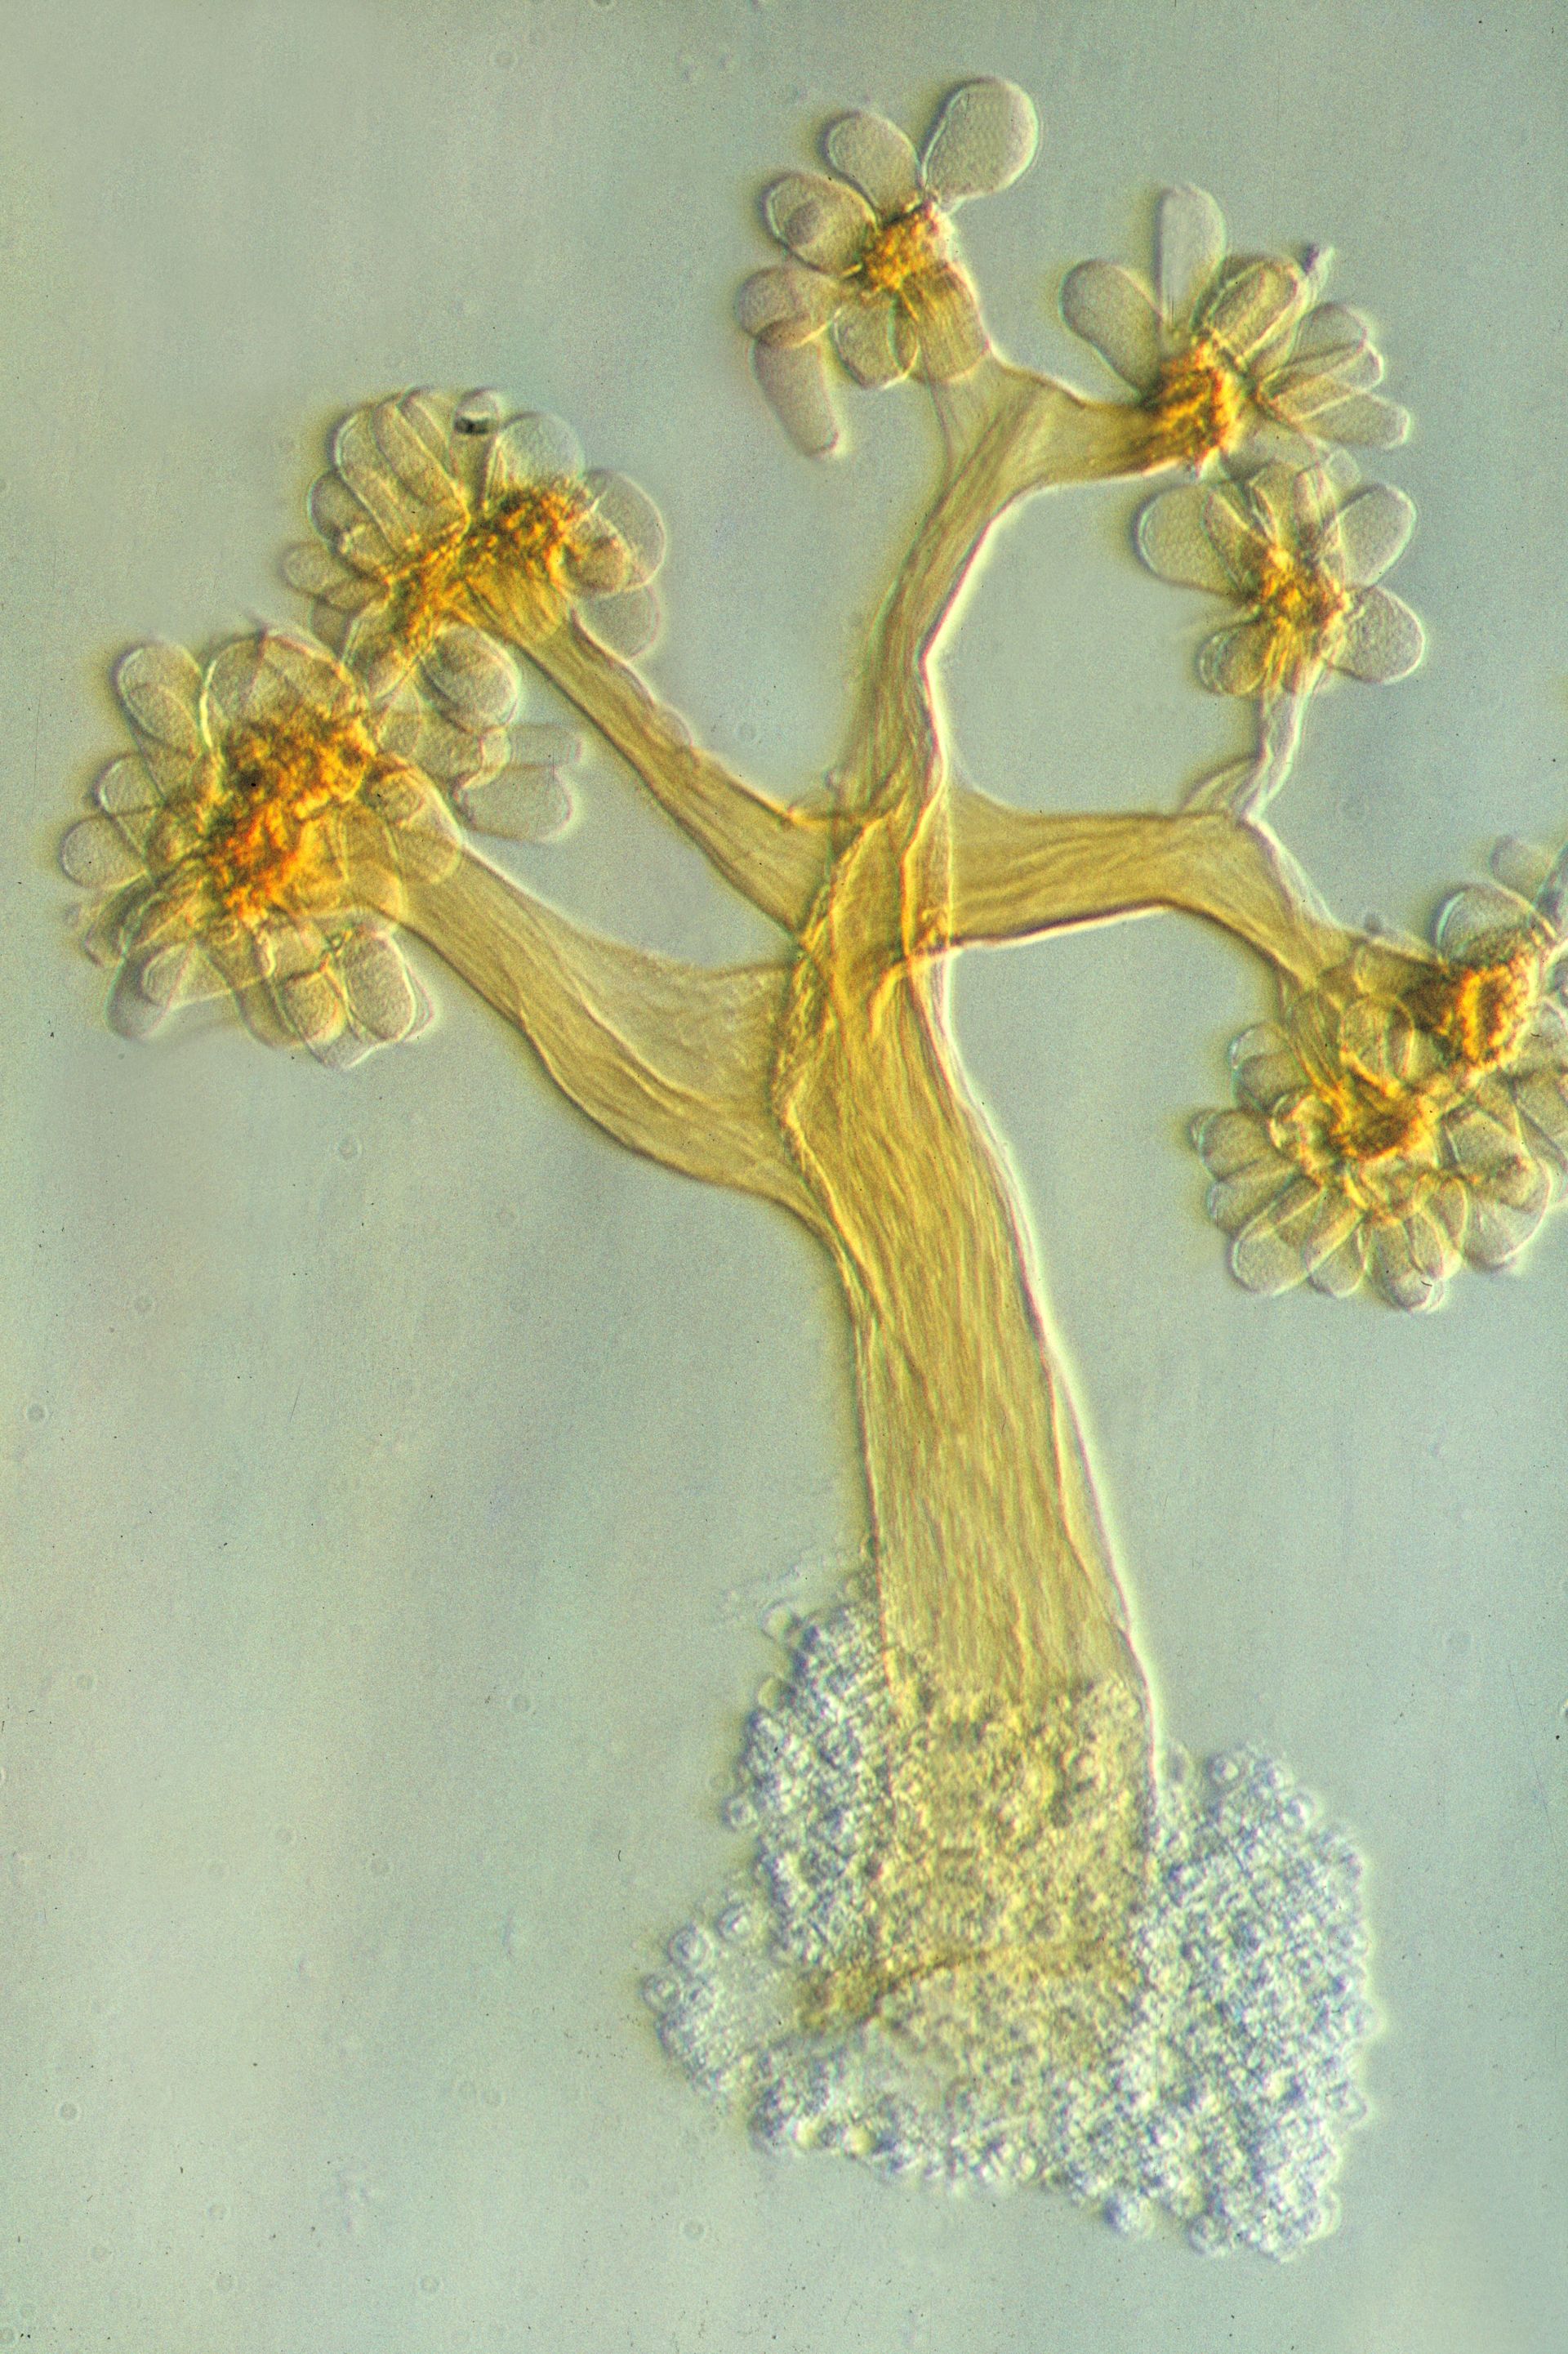 Fruchtkörper von Myxobakterien unter dem Lichtmikroskop.